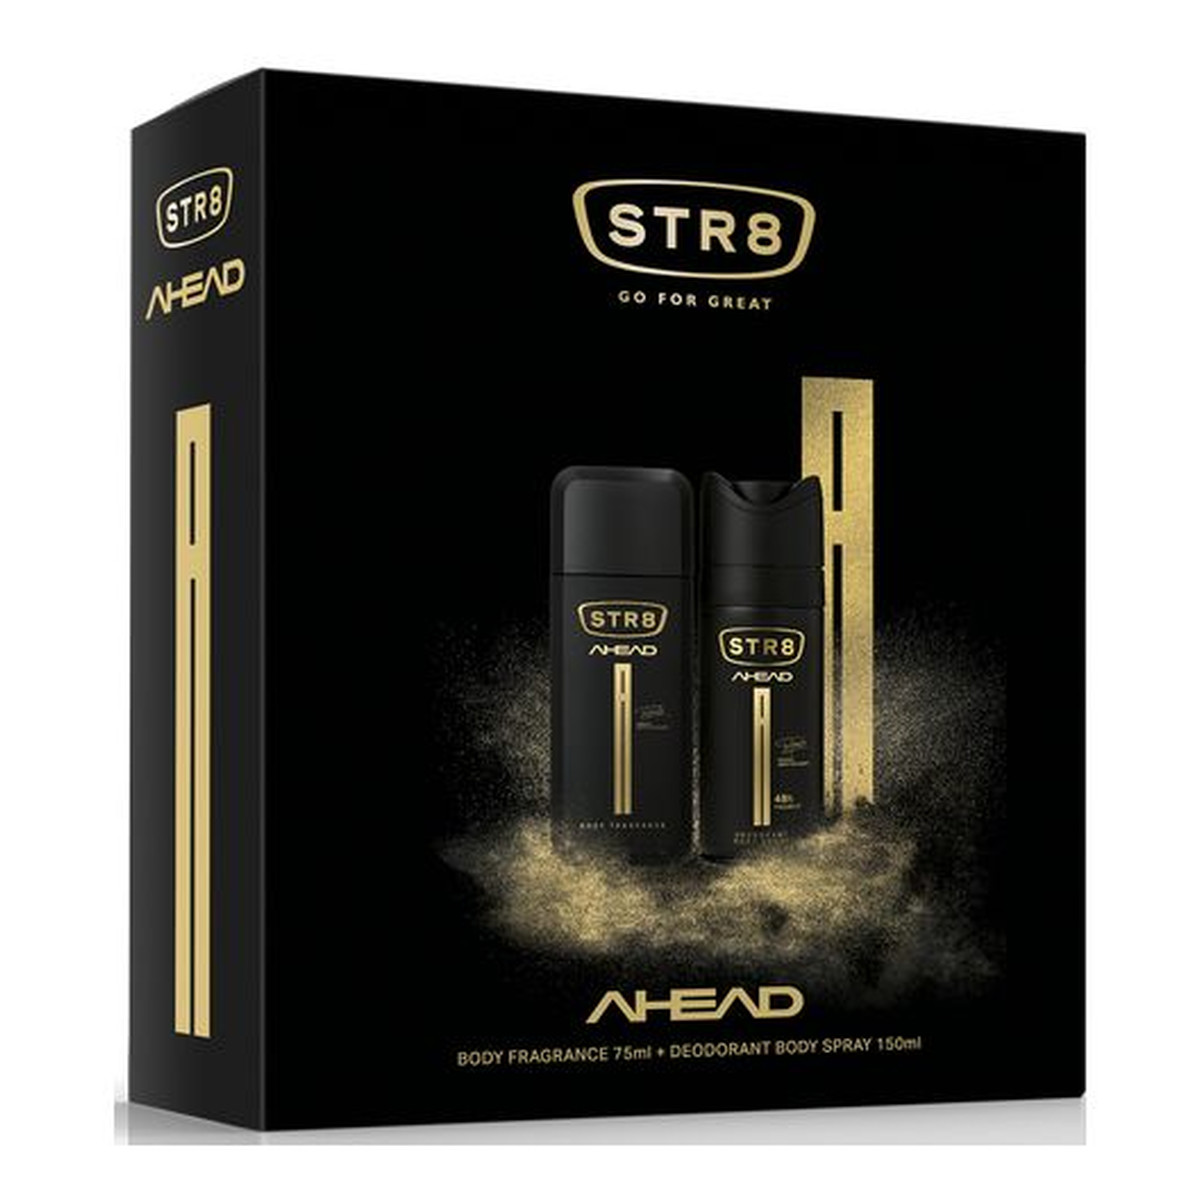 STR8 Ahead zestaw prezentowy (dezodorant atomizer 75ml + dezodorant spray 150ml)